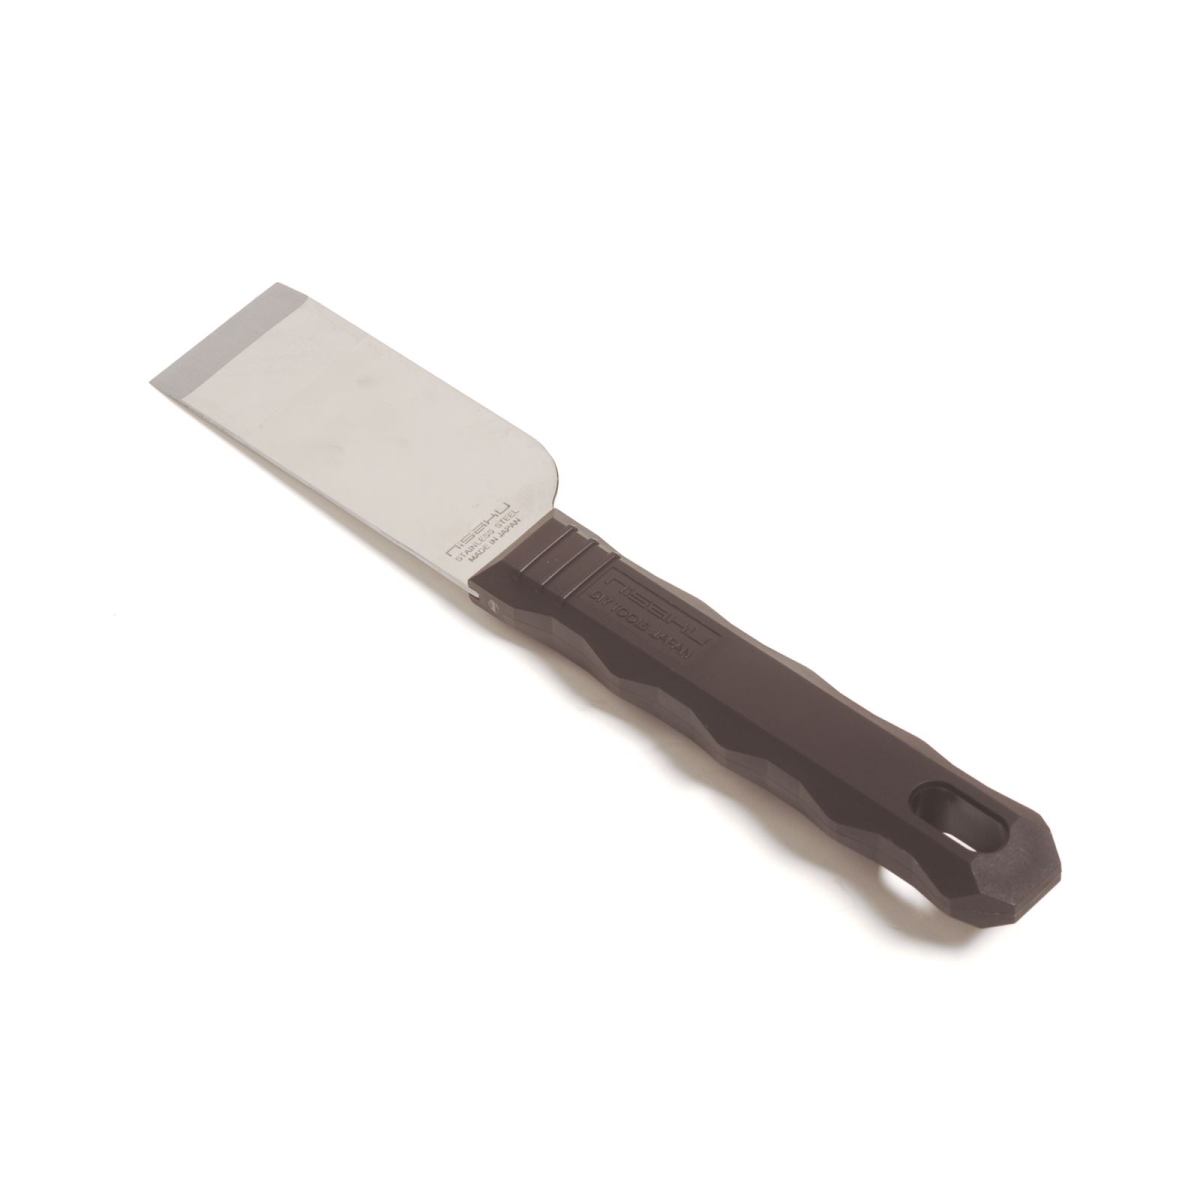 Njp300 1.5 In. Blade Stainless Steel Scraper Knife, Black